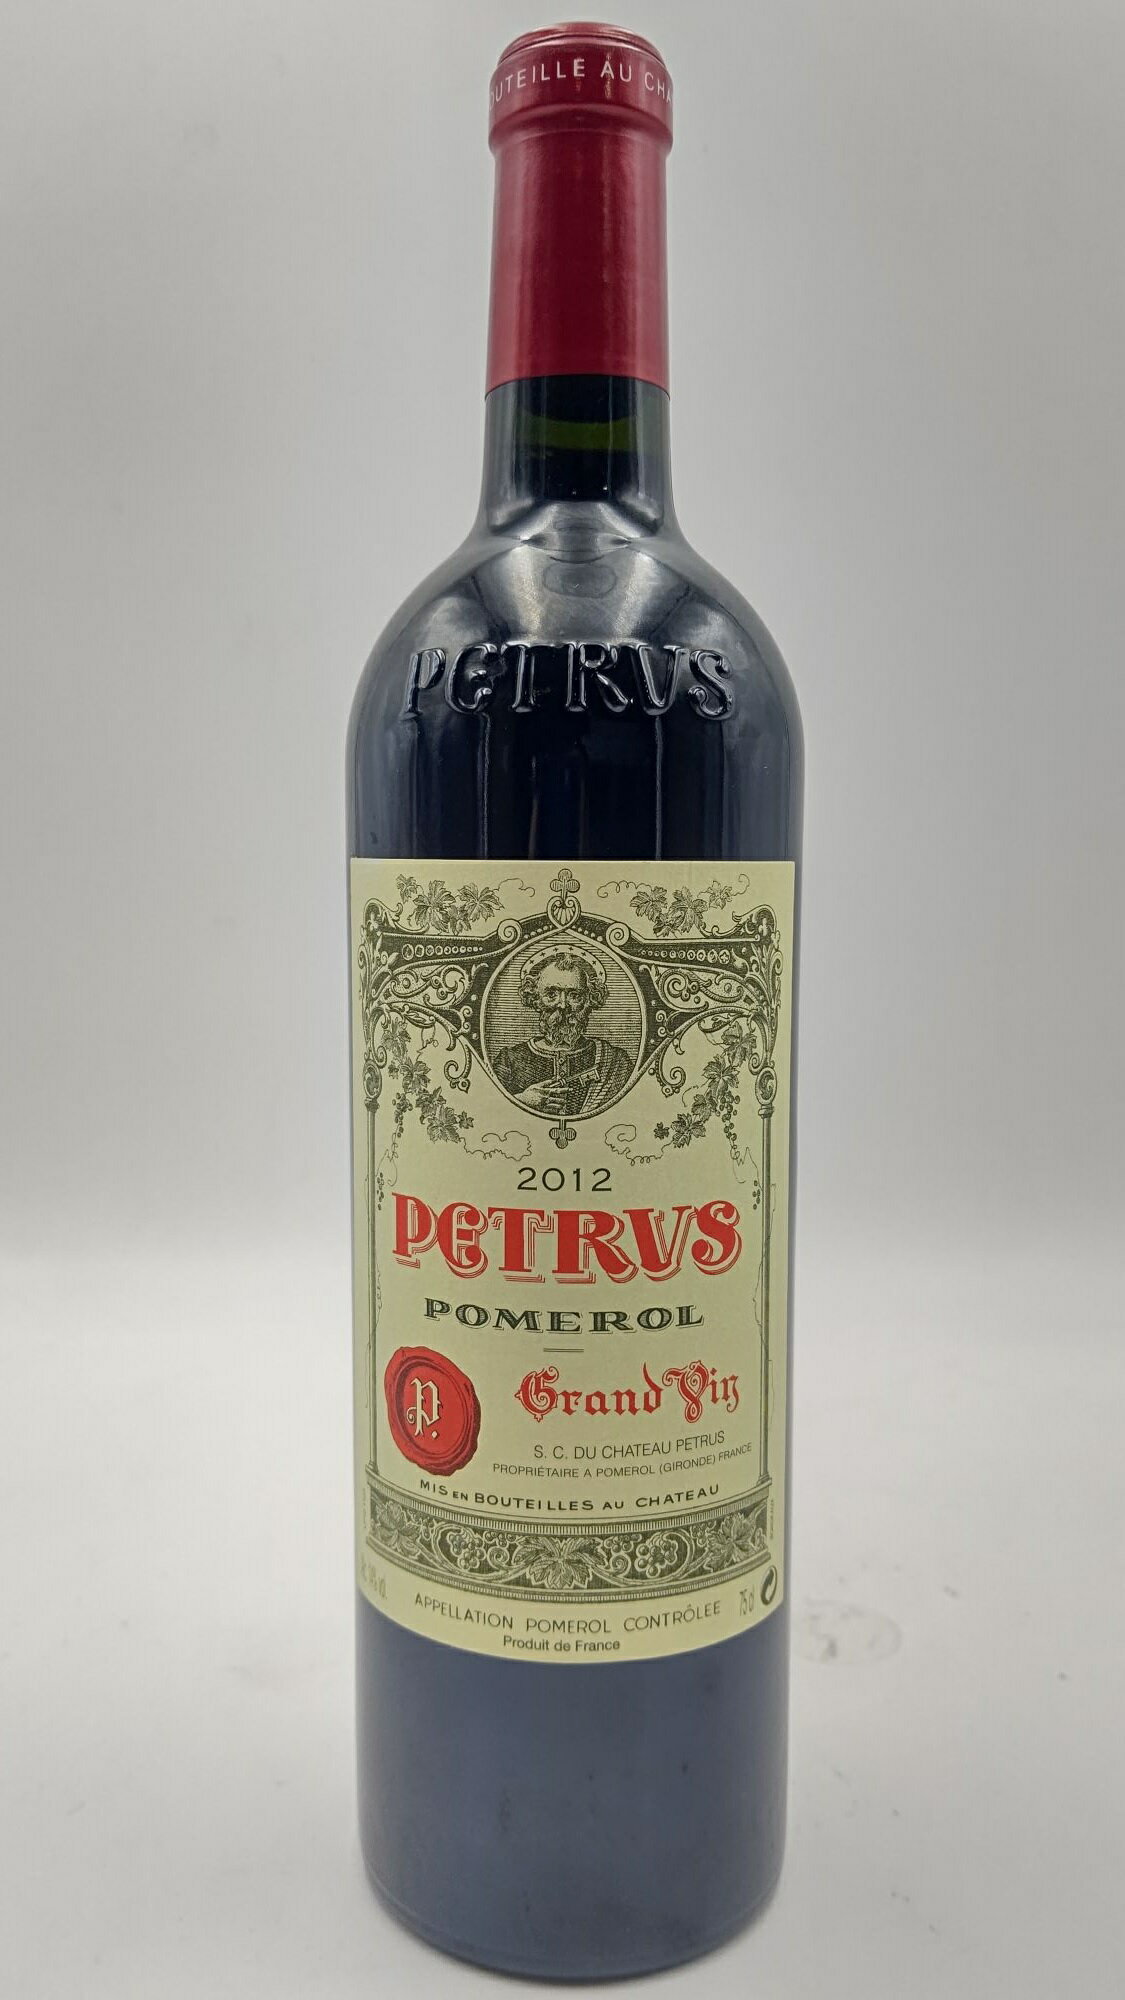 ペトリュスは既にワインという領域を超越しています。ロバート・パーカー監修ワインアドヴォケイトでは100点獲得を何回も獲得し、ボルドー含め他のワインを寄せ付けません。他の追随を許さないクオリティに加え、生産量の少なさが輪をかけて、五大シャトーを遥かに凌ぐ高値で取引され、世界のワイン愛好家のセラーに収まってしまうため、市場にはほとんど出回らない世界屈指のグラン・ヴァンです。シャトー・ペトリュスの畑は約11.4ヘクタールと他のシャトーと比べても非常に狭い。基本的に周りのシャトーの畑よりも砂利が少なく、黒粘土と呼ばれる水を吸収するとふくらむ性質をもつ特殊な粘土が多く含まれている。この特徴的な土壌が、ペトリュスが芸術的なワインを生み出し続けている。熟した黒系果実、ドライ無花果などの濃縮したアロマがあり、その奥にはキノコや湿った腐葉土、トリュフ、紅茶、スパイス、セージなどの複雑で奥深いブーケが漂う。洗練されていて、タンニンは細かく円やかで丸みがあり水分ではなくオイルを口にしているような味わい。しっかりしたボディと溢れんばかりのミネラル分は、堂々たるボルドー・ポムロールであり、おそらくボトルの熟成とともにより完成度の高い神秘的なワインとなる。 内容量 750ml ブドウ品種 ほぼメルロ、カベルネ・フラン 保存方法 冷暗所にて保存 原産国名 フランス　　ボルドー・ポムロール 輸入者 日本リカー [ct_w_0],[ct_w_22],[ct_w_29]